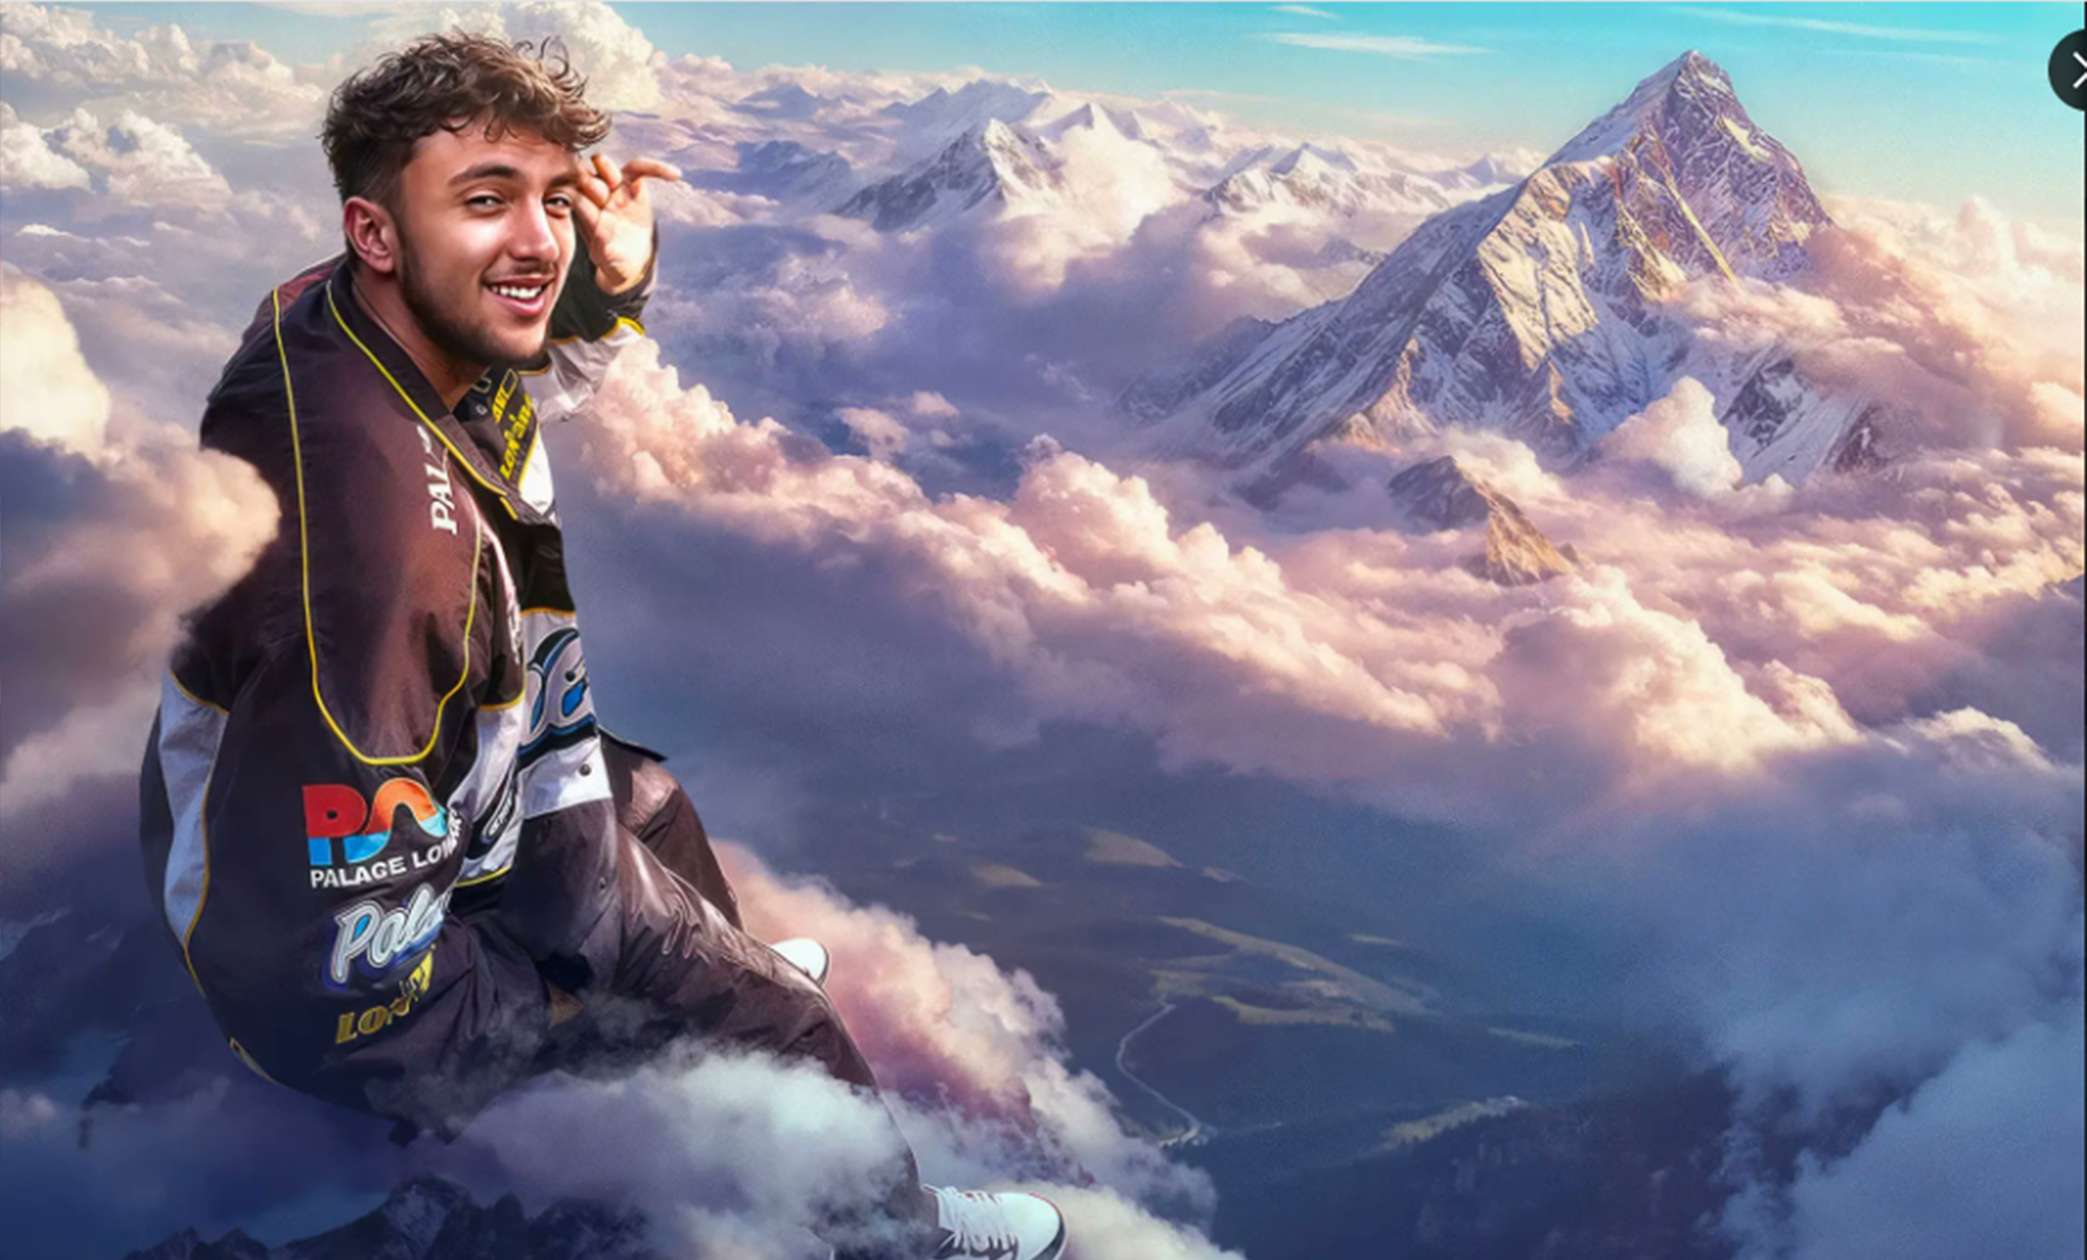 Le célèbre YouTuber français, Inoxtag, a réalisé un exploit monumental en atteignant le sommet de l'Everest. Connu pour ses défis audacieux et son esprit aventureux, Inoxtag a une fois de plus repoussé ses limites et inspiré des millions de fans à travers le monde.